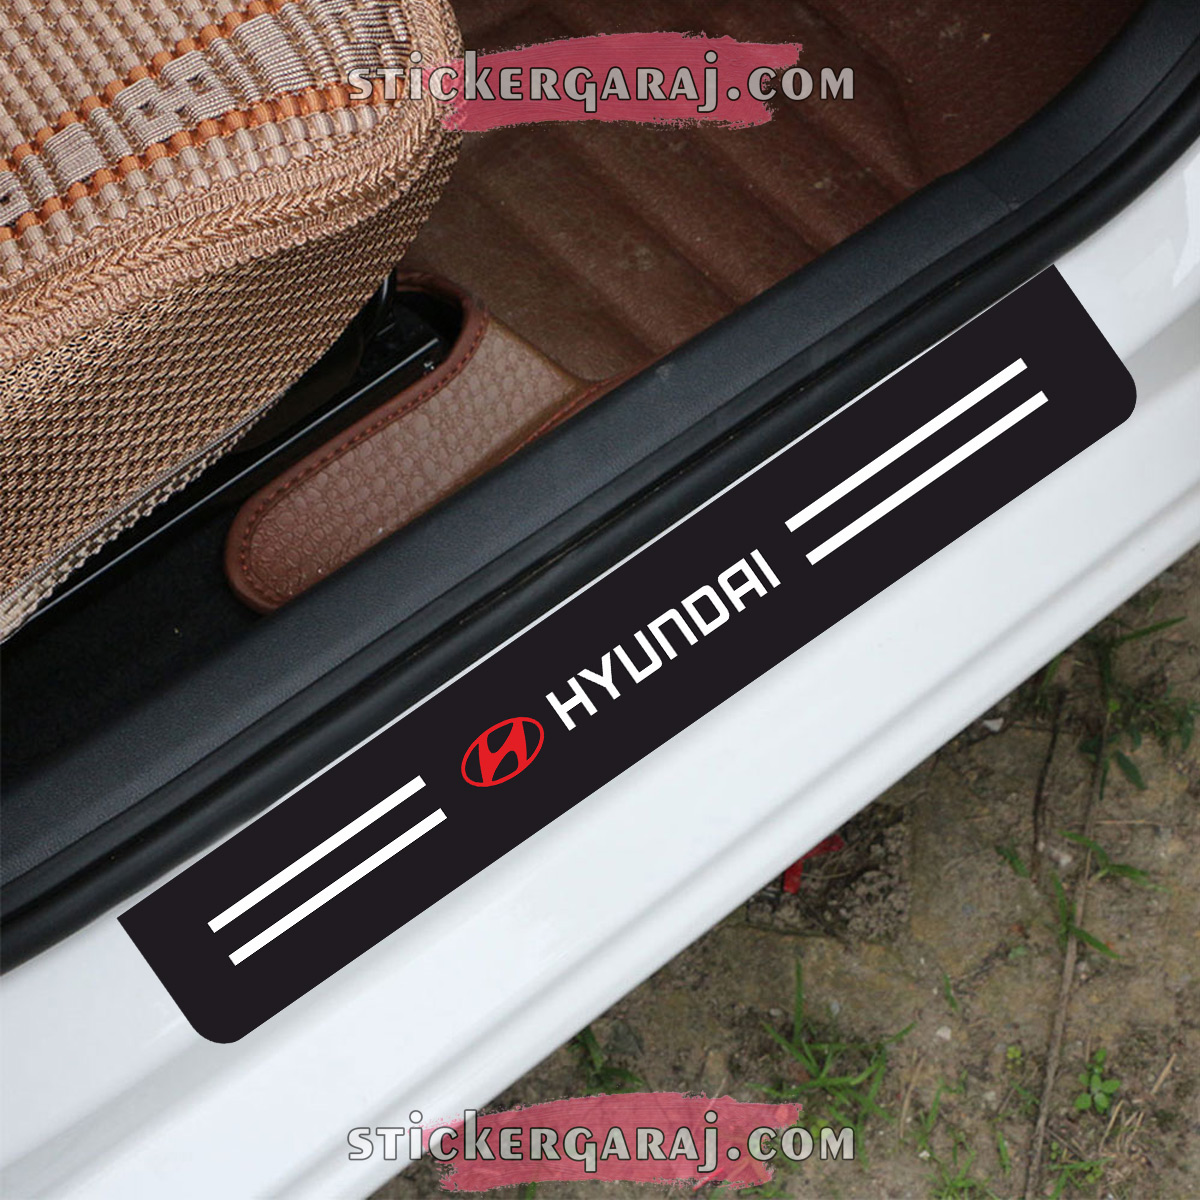 hyundai1 - Hyundai kapı eşiği sticker